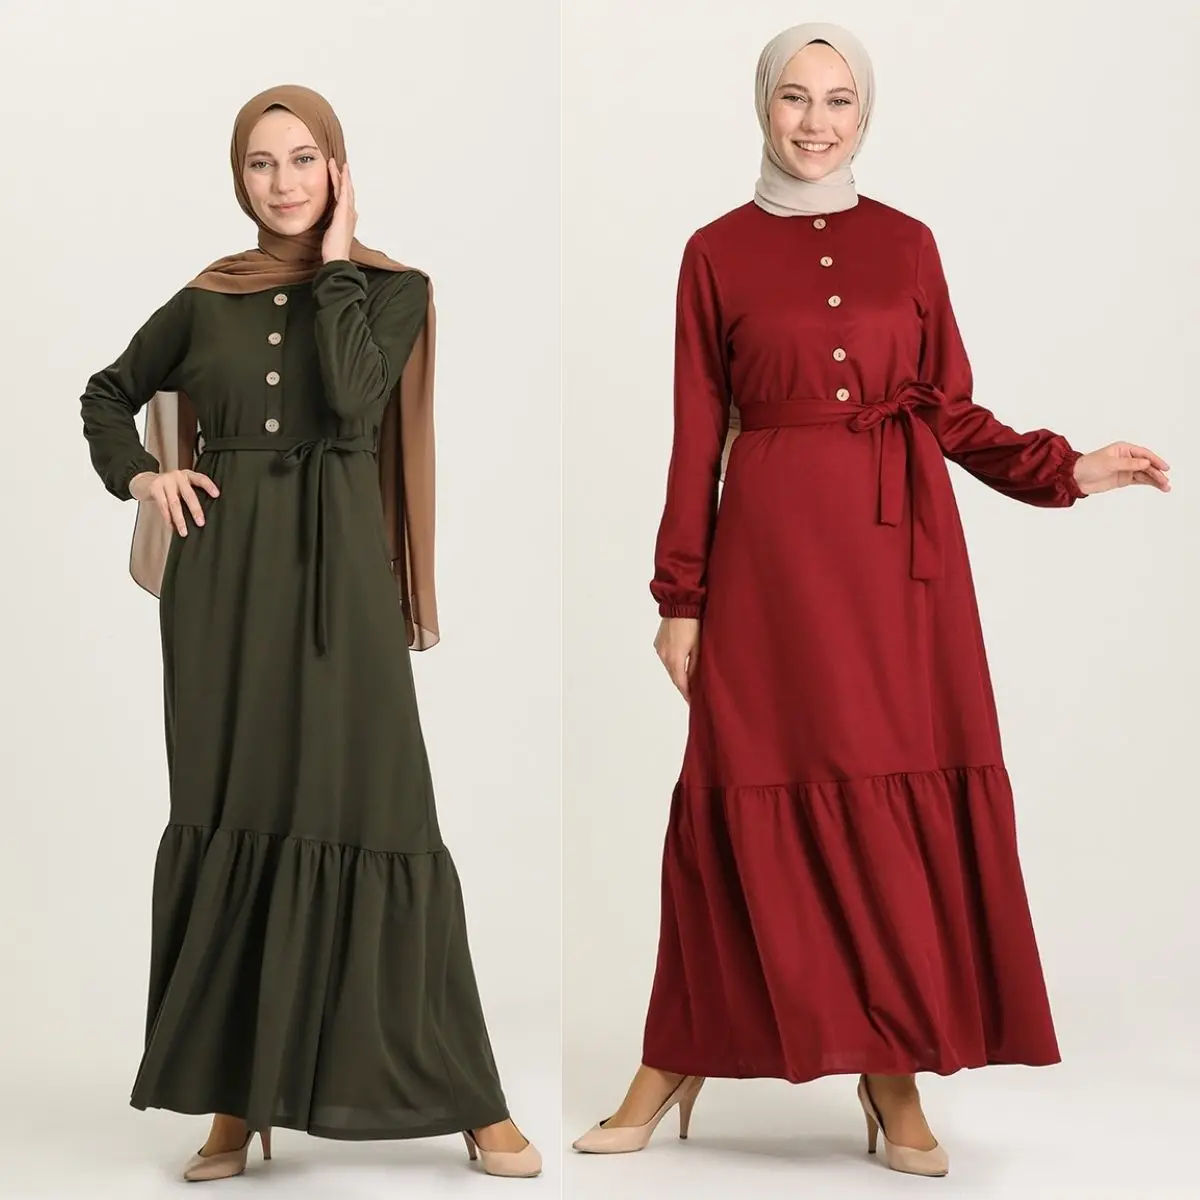 Плиссированное Платье на пуговицах, с поясом, с длинным рукавом, на молнии, без подкладки, сезонное зимнее женское платье, Турция, мусульман